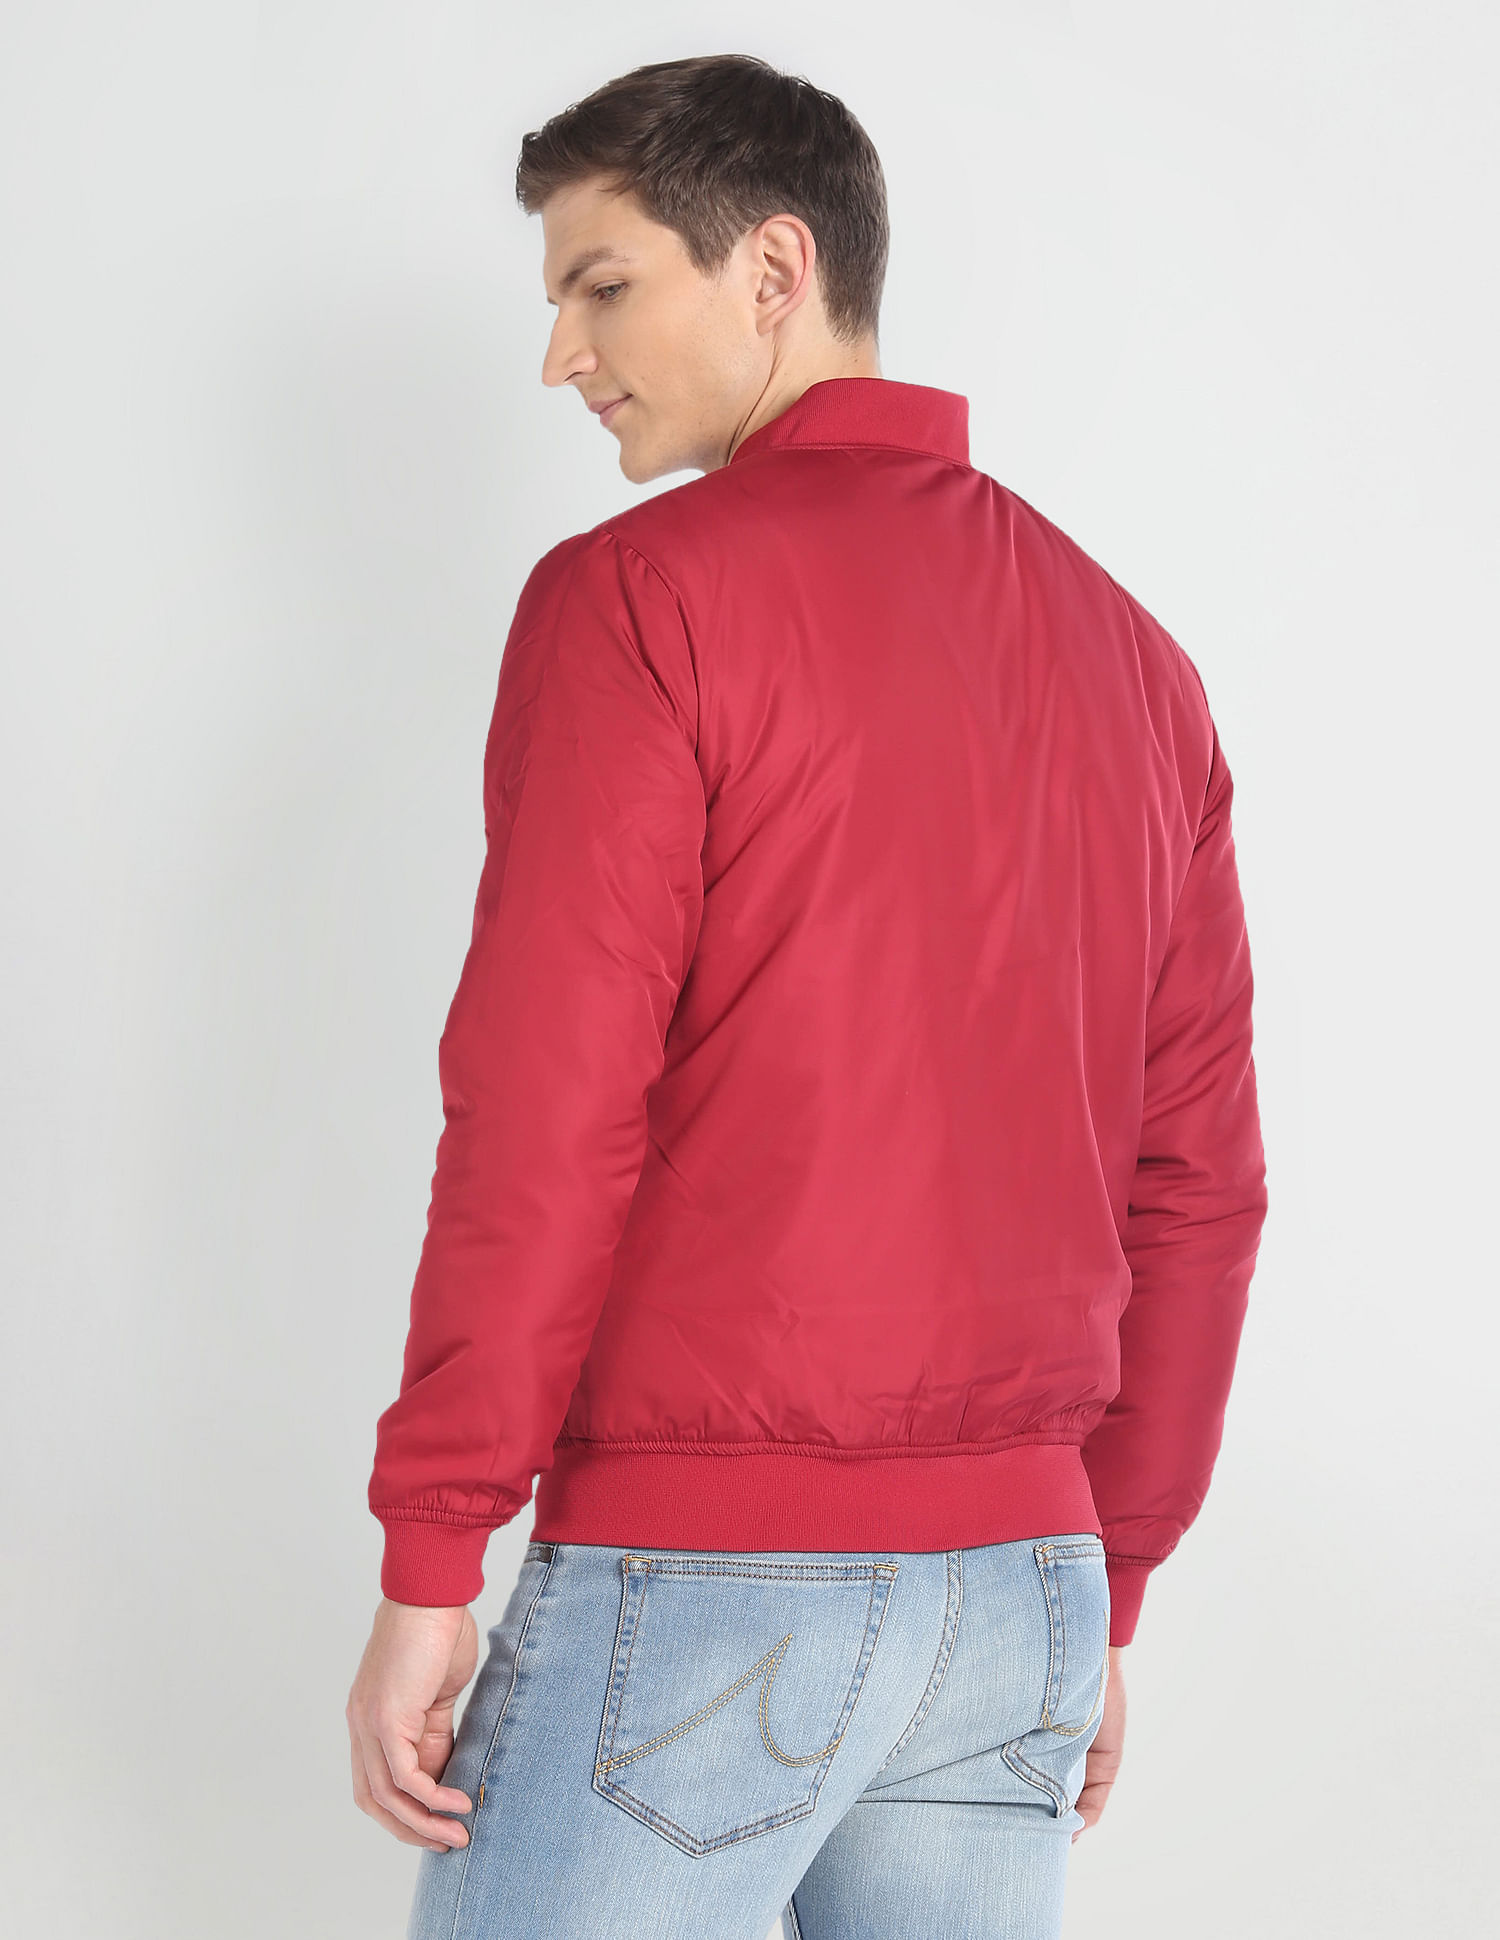 Bomber Jacket Denim Coats, Jackets & Vests for Men for Sale | Shop New &  Used | eBay